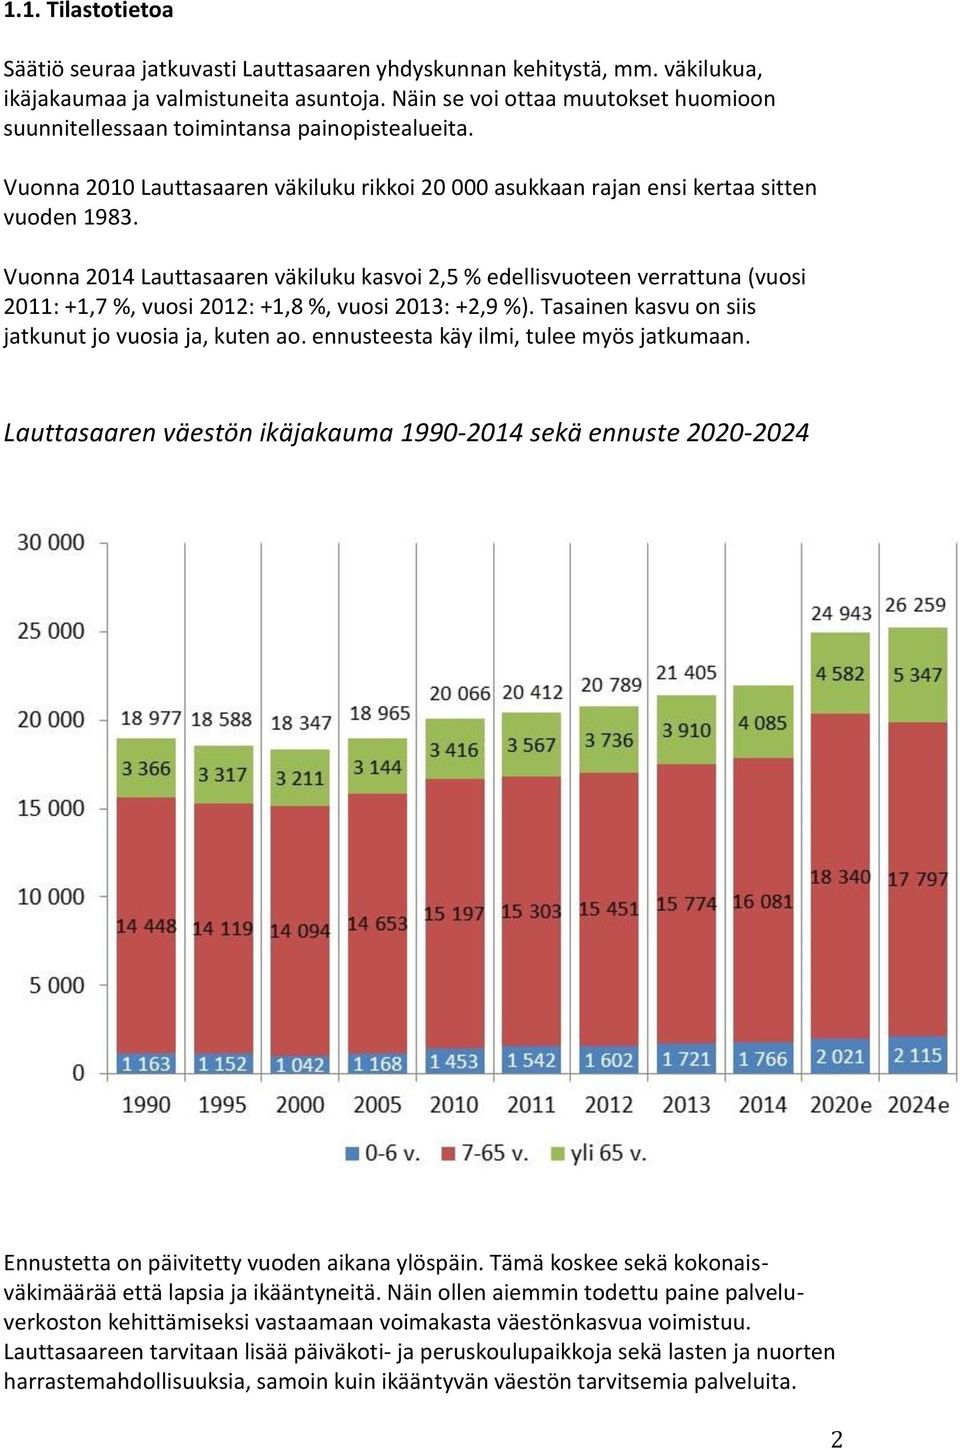 Vuonna 2014 Lauttasaaren väkiluku kasvoi 2,5 % edellisvuoteen verrattuna (vuosi 2011: +1,7 %, vuosi 2012: +1,8 %, vuosi 2013: +2,9 %). Tasainen kasvu on siis jatkunut jo vuosia ja, kuten ao.